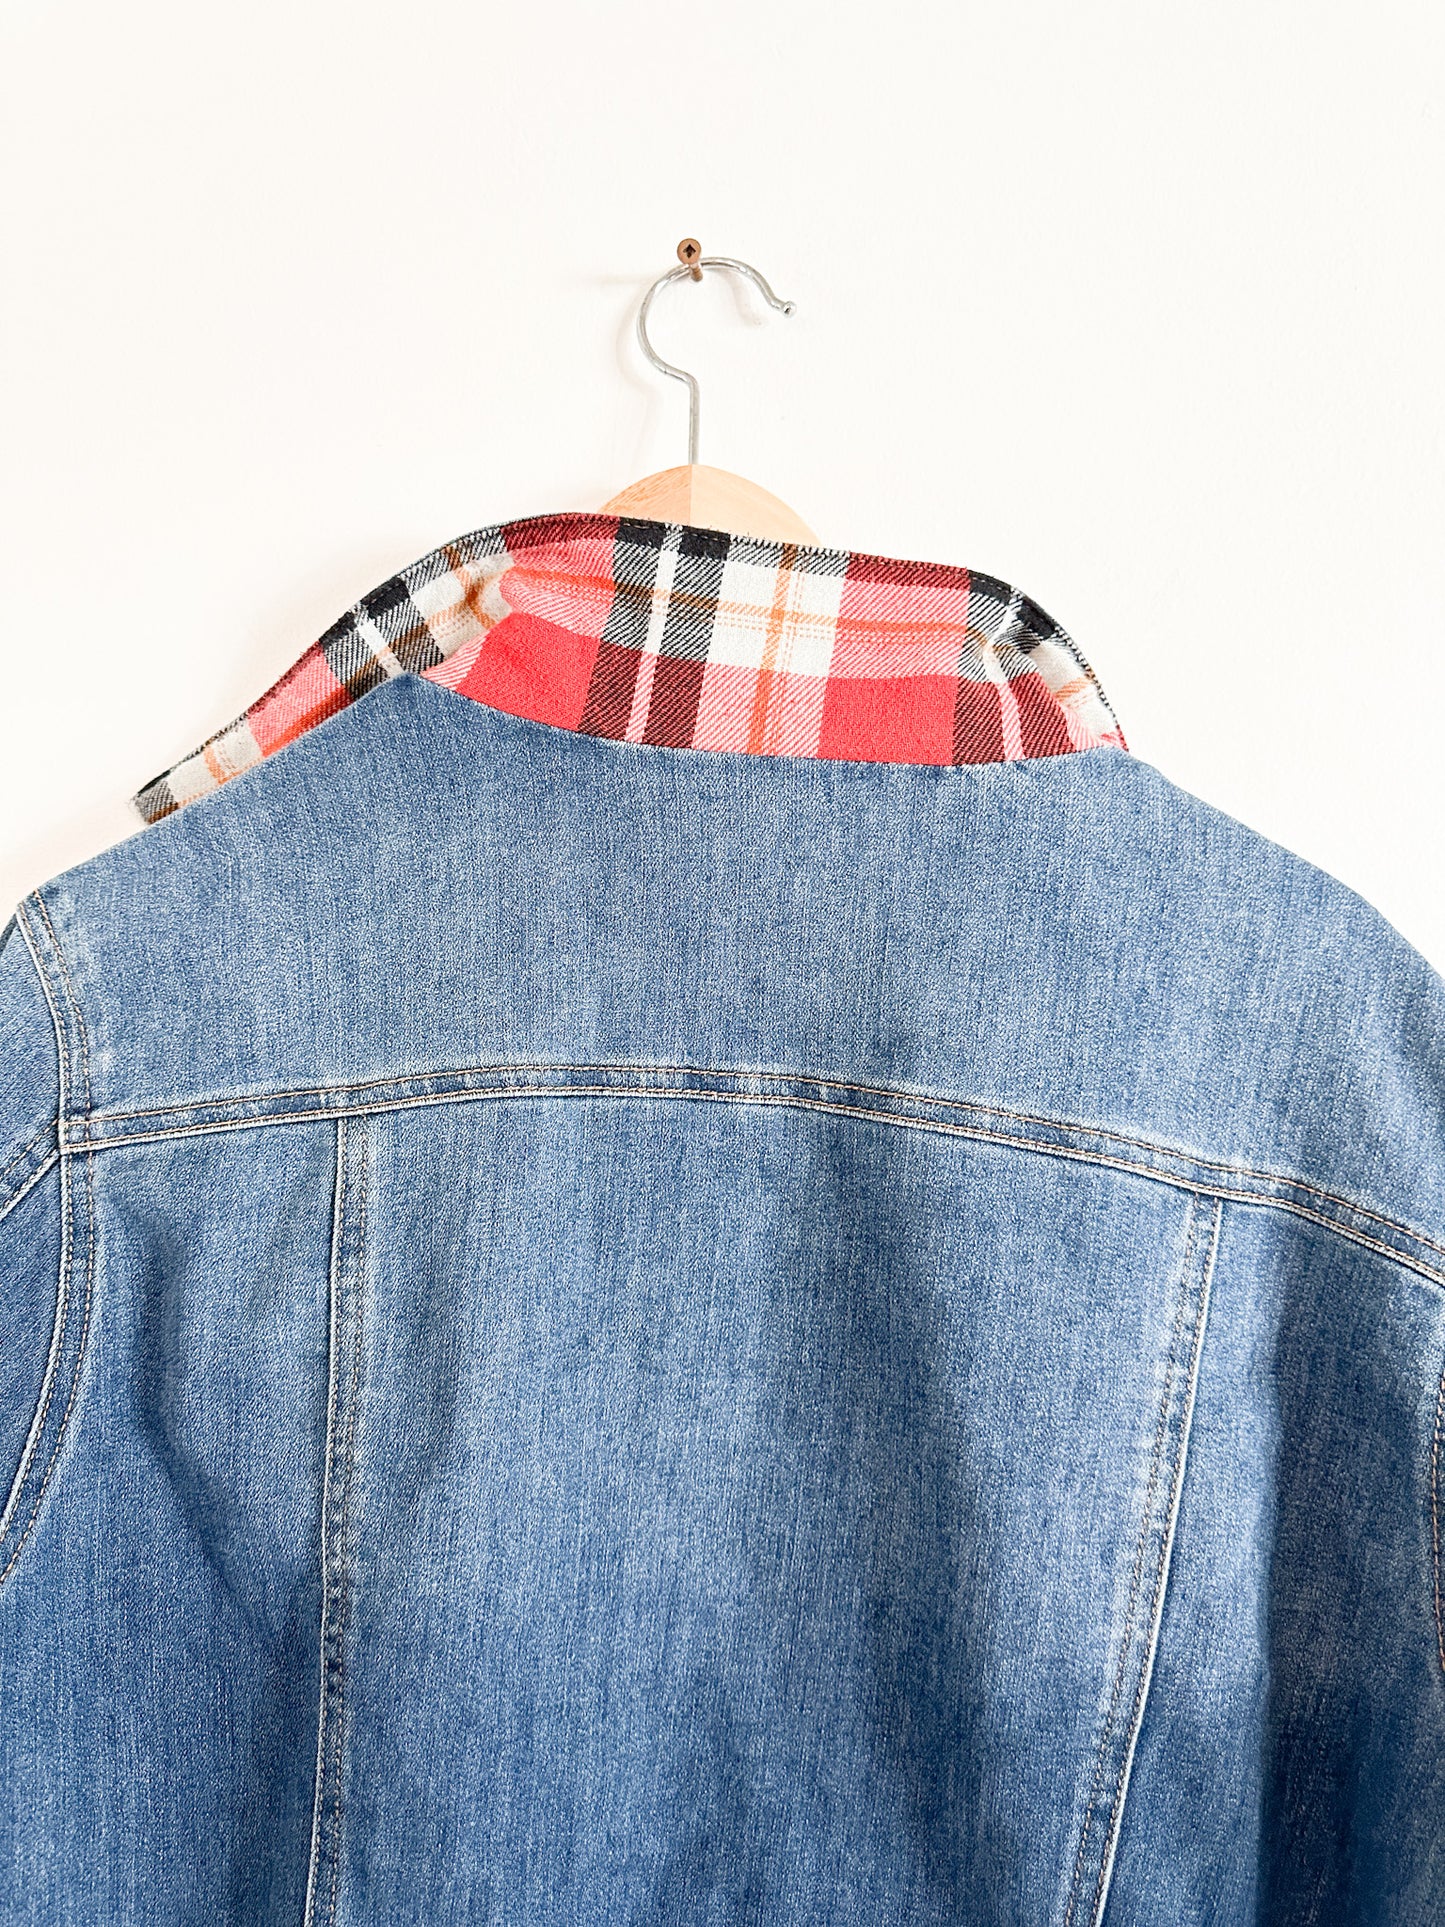 Parasuco Denim Jacket with Plaid Lining| Vintage Jean Jacket with Plaid Lining | Winter Jean Jacket | Size: XXL| Plus Size Jean Jacket